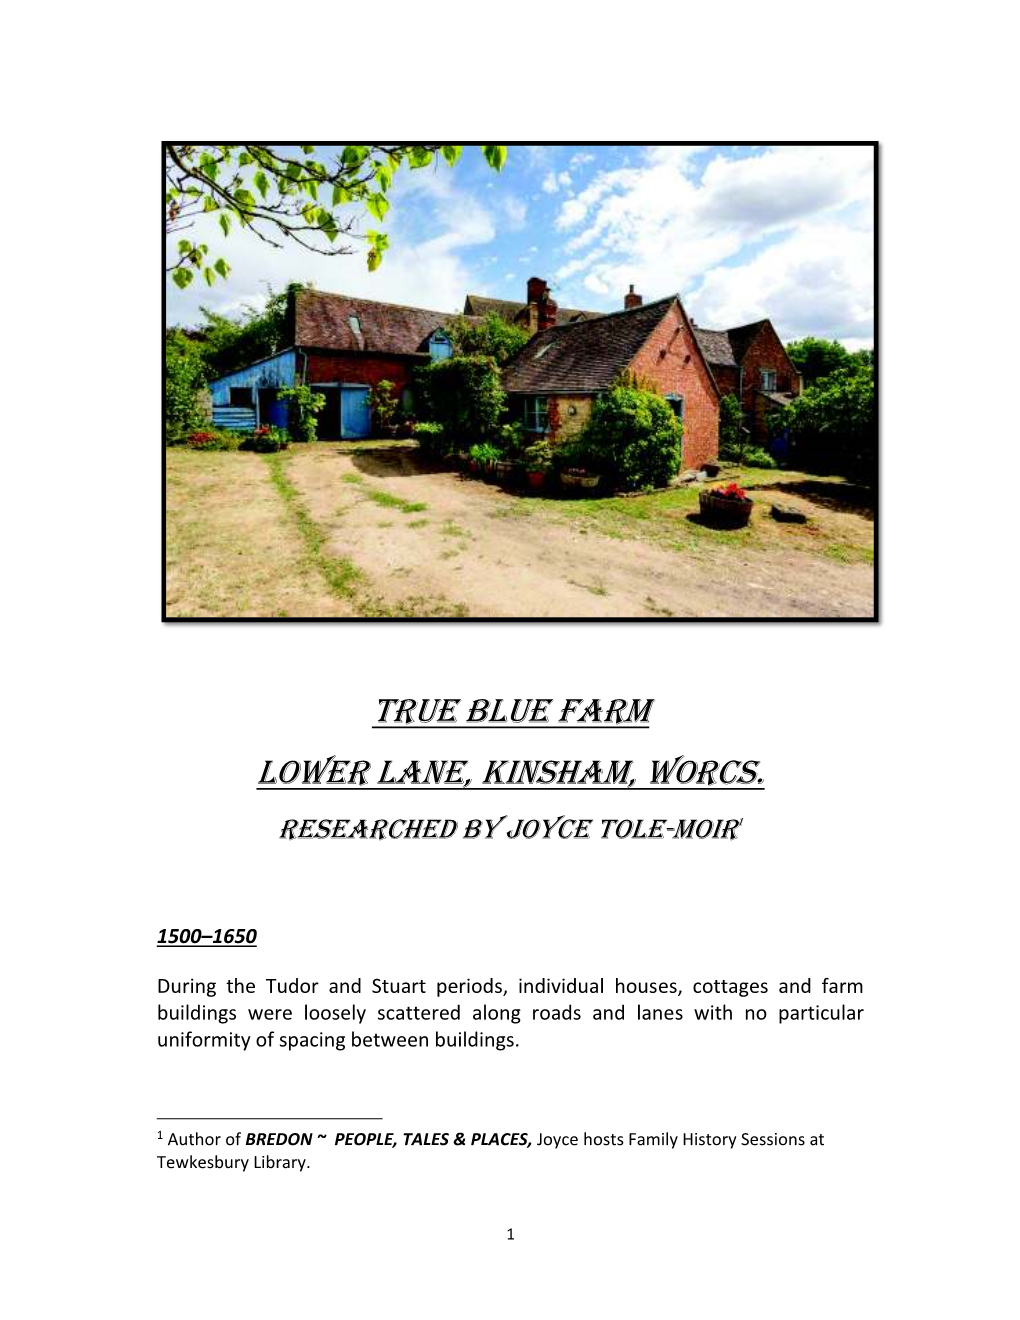 True Blue Farm Lower Lane, Kinsham, Worcs